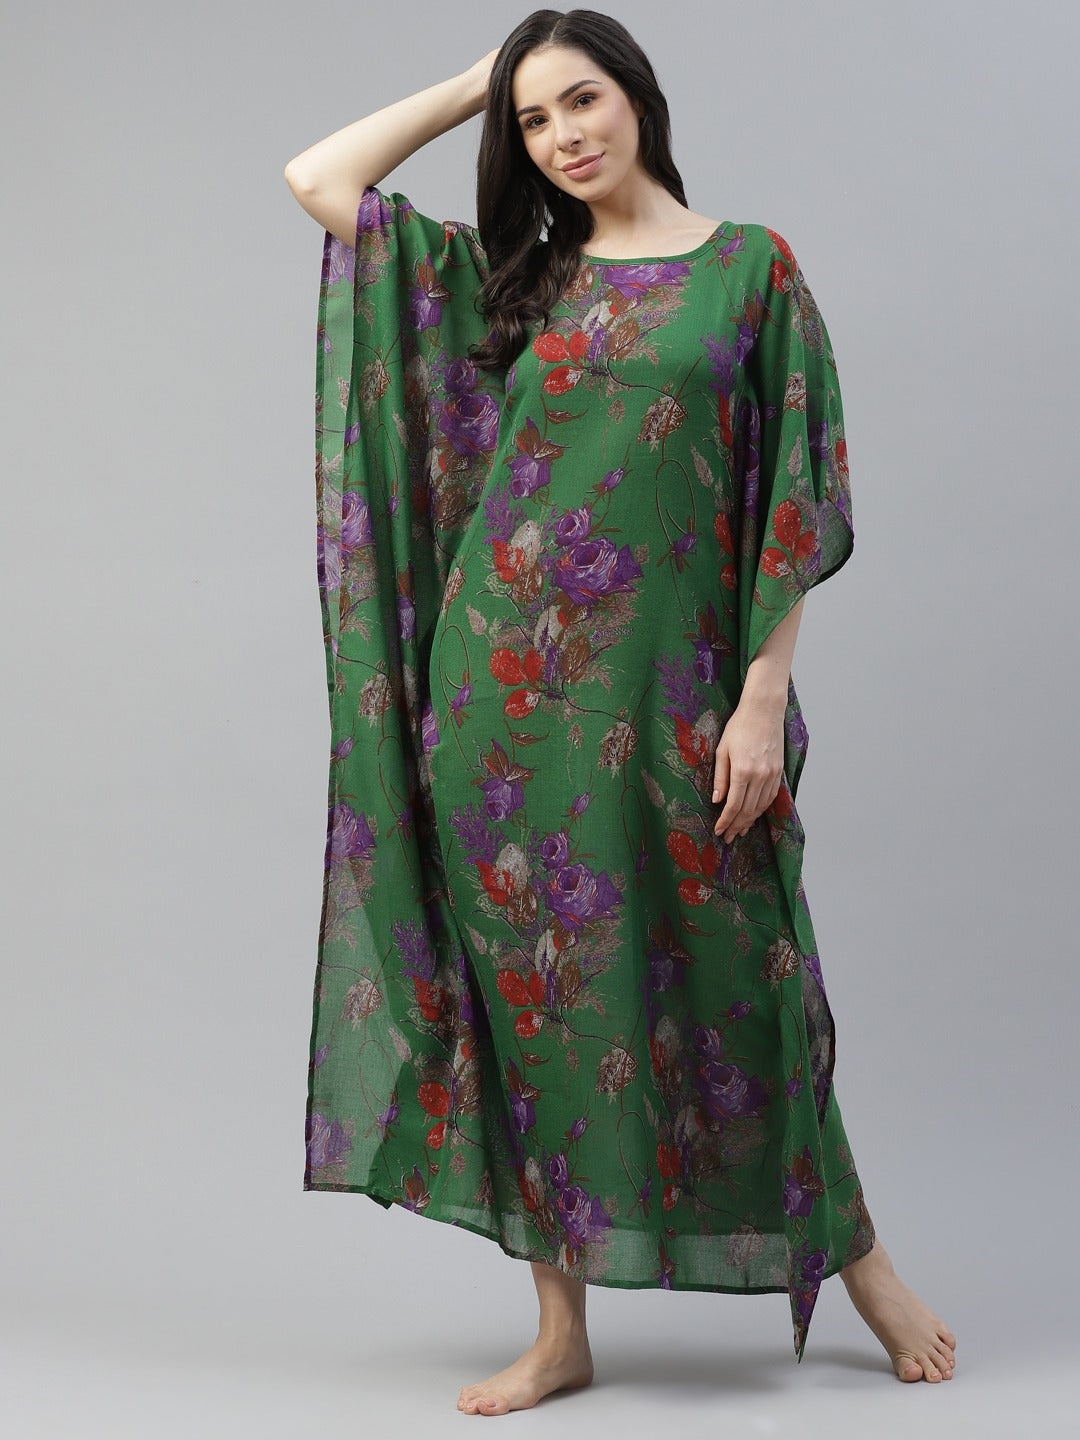 Cottinfab Green & Purple Printed Kimono Maxi Nightdress